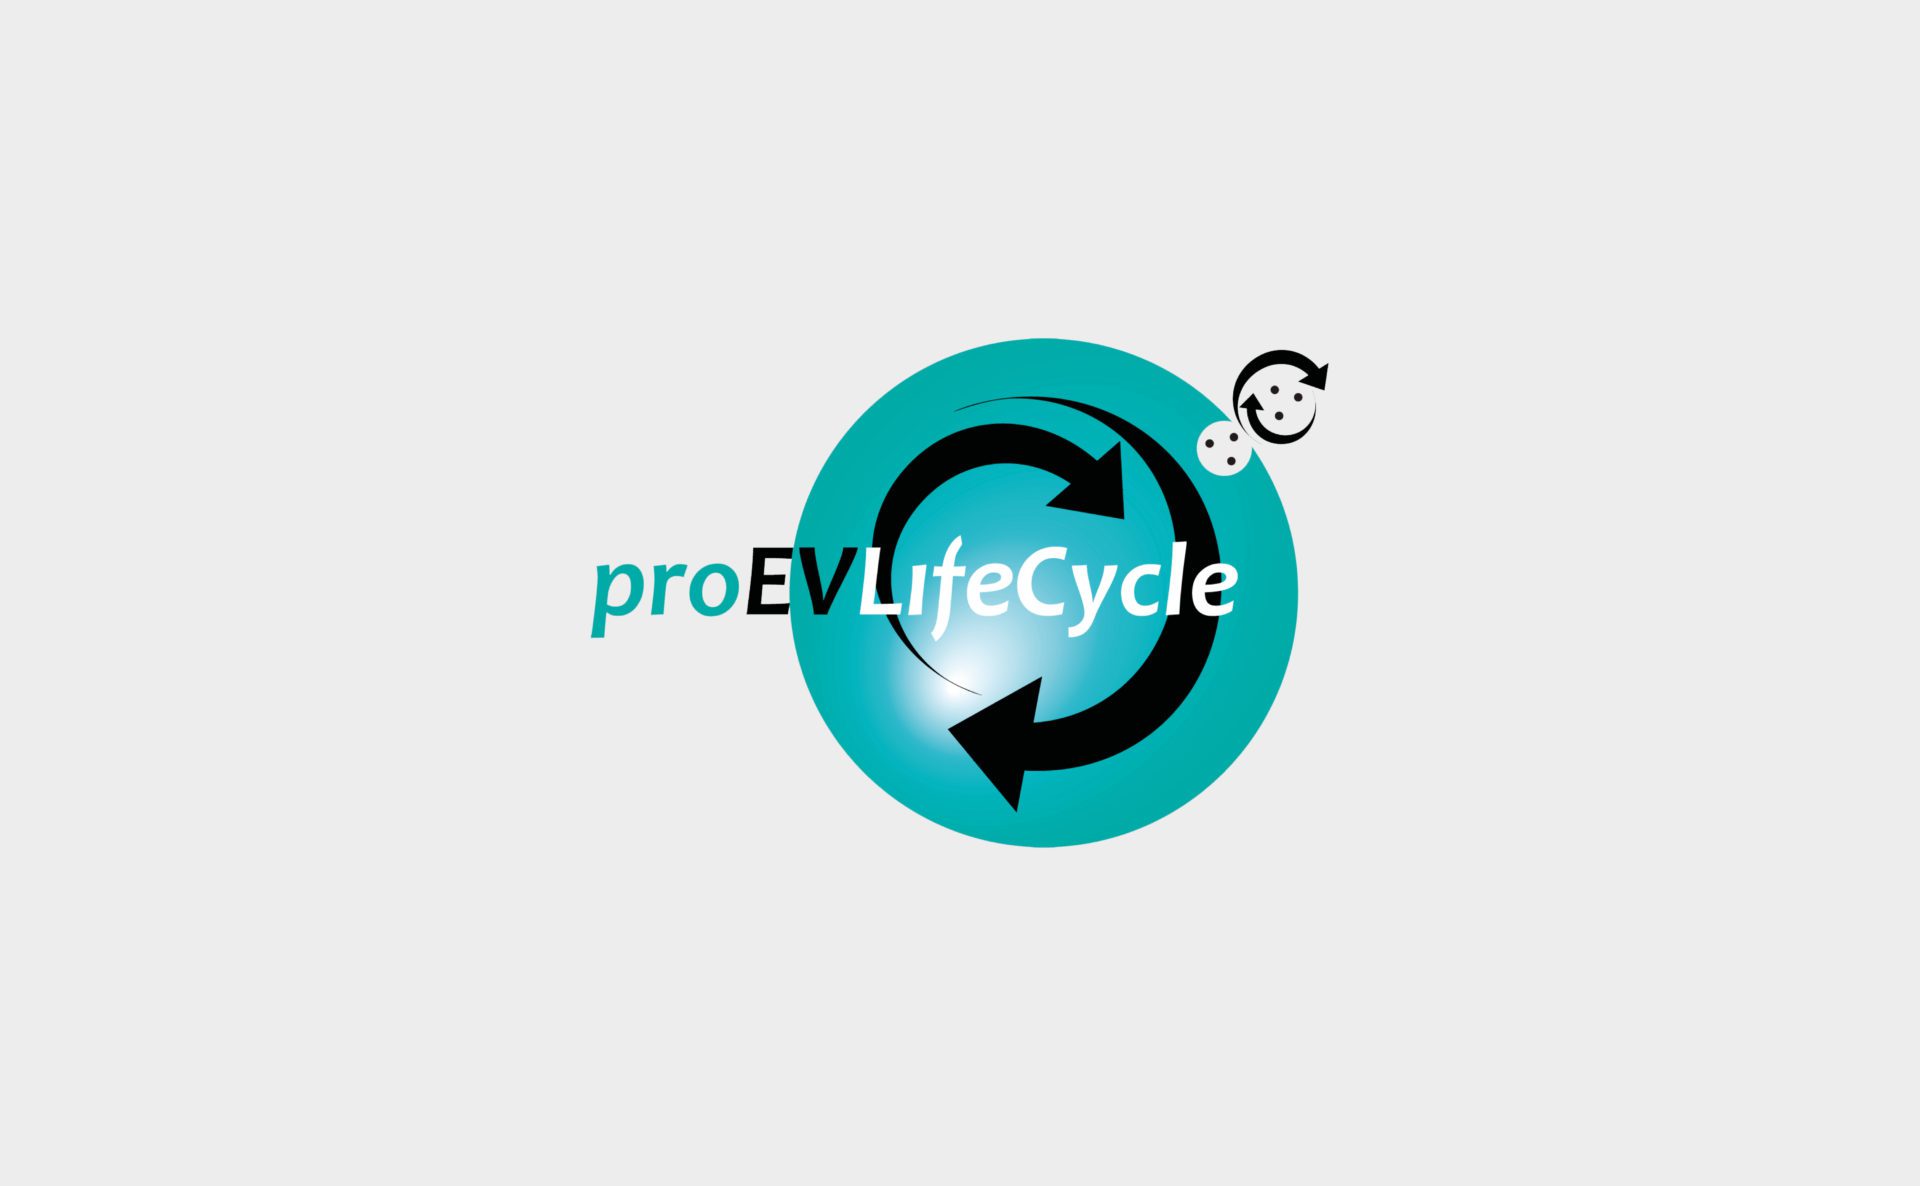 proEVLifeCycle